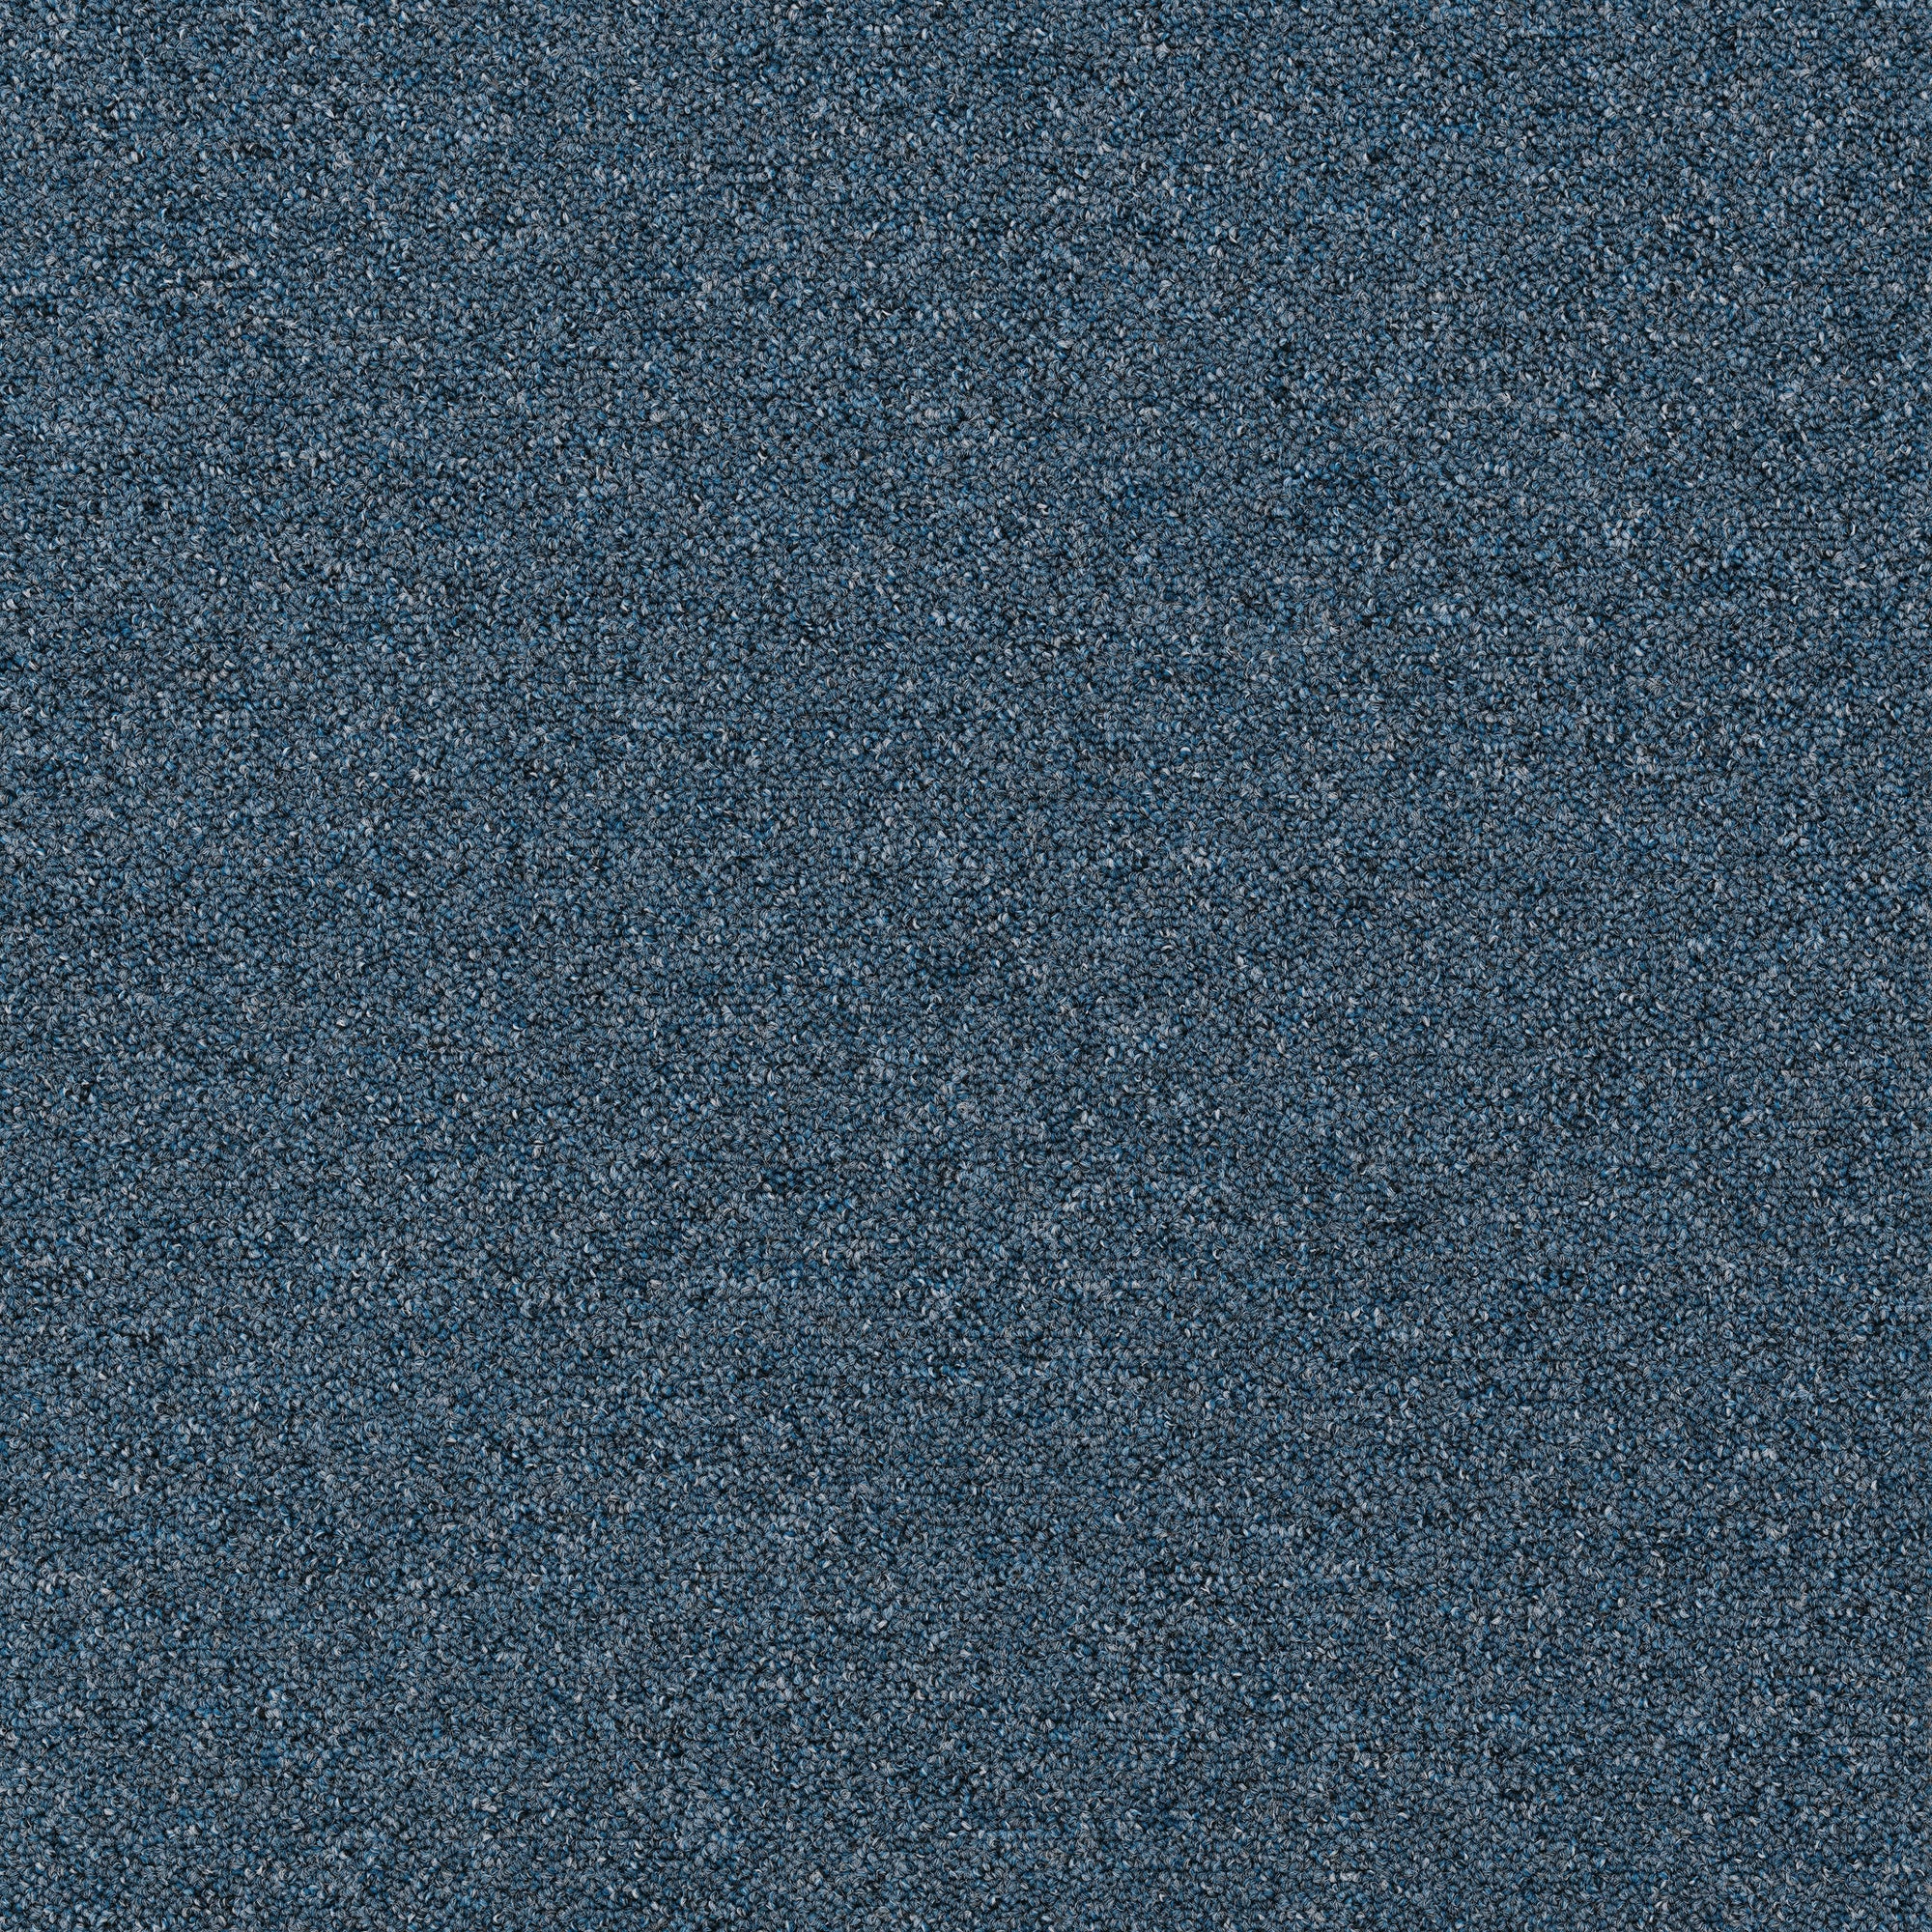 Plusfloor Rekka Sky Blue carpet tiles for offices 100% Nylon